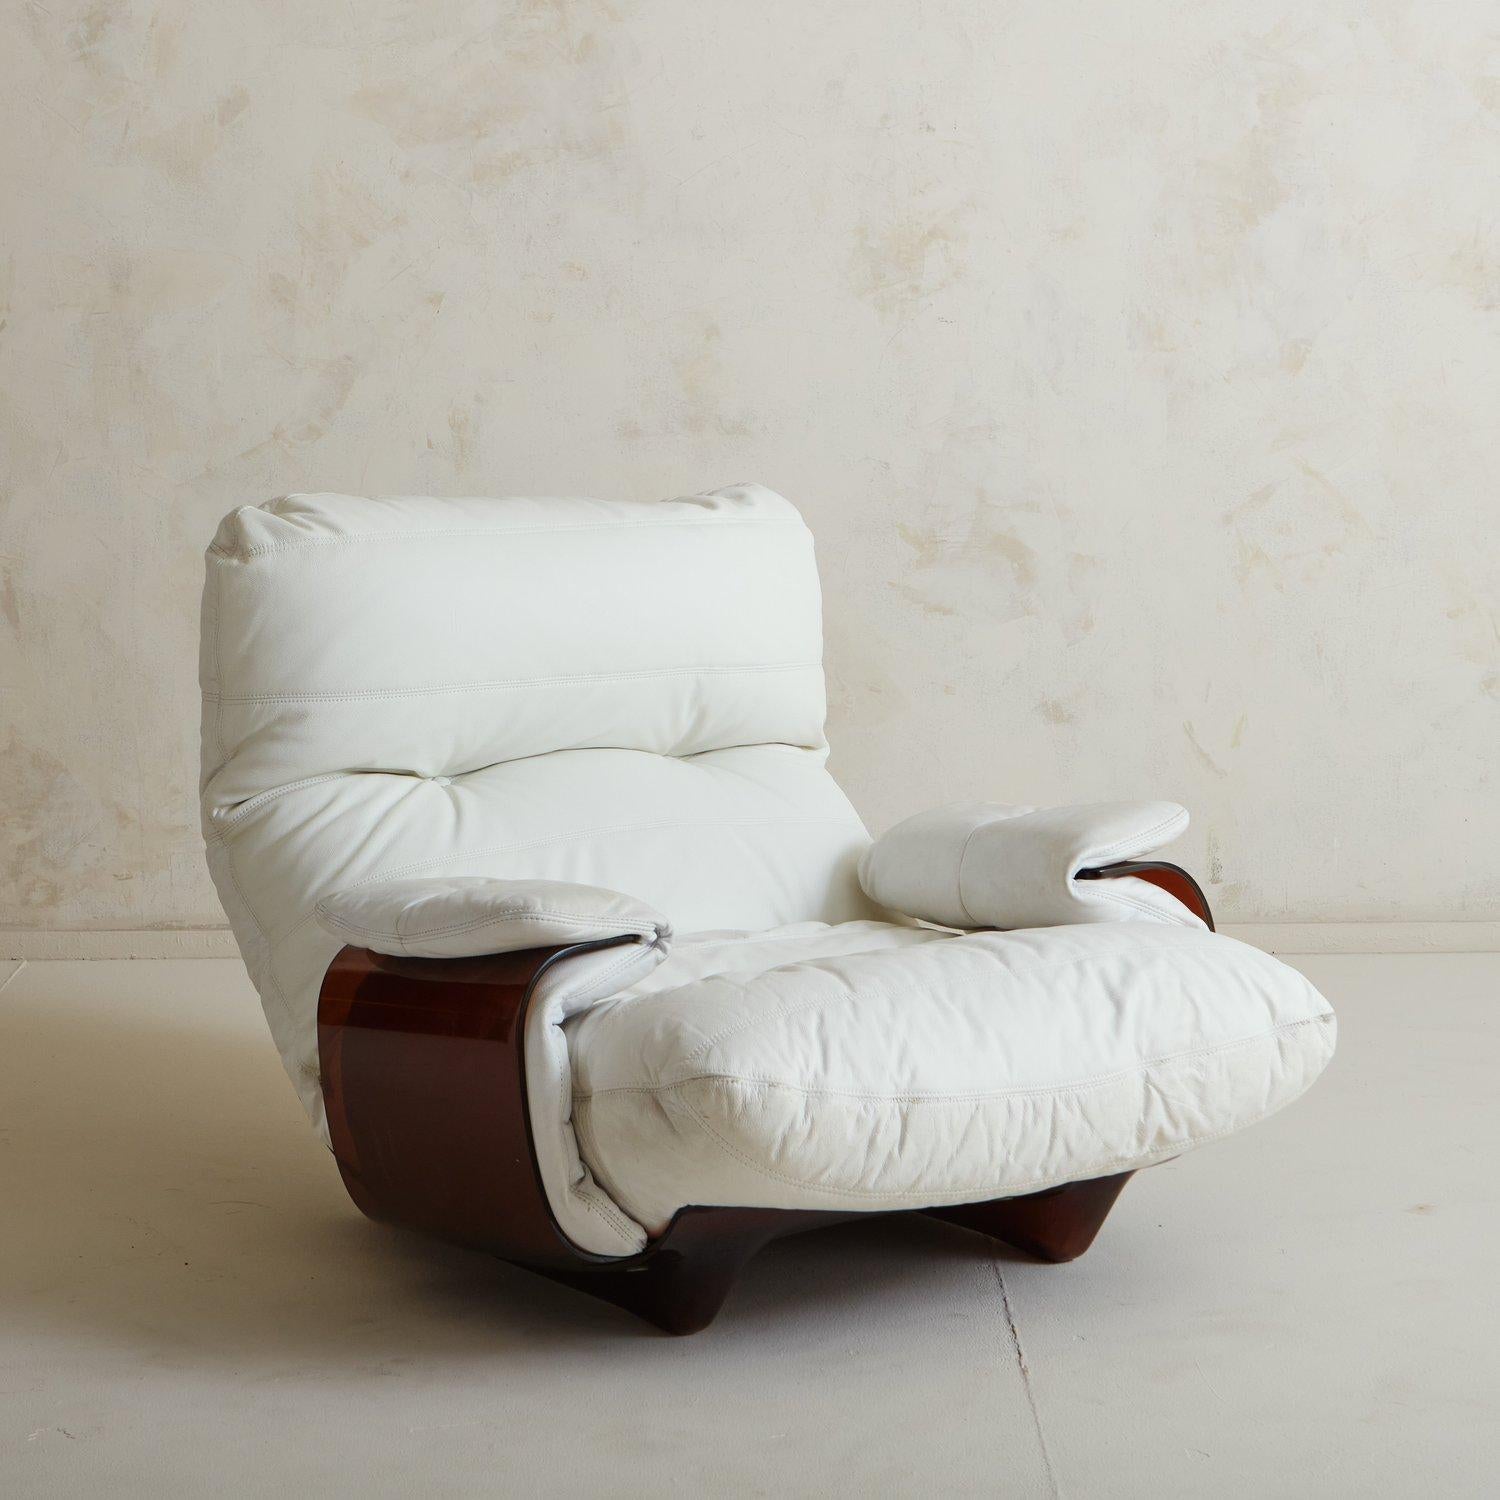 Conçue par Michel Ducaroy pour Lignet Roset, la chaise Marsala se caractérise par une structure sculpturale en plexiglas ambré entièrement incurvée. Cette chaise Marsala est recouverte d'un magnifique cuir blanc. L'étiquette d'origine 